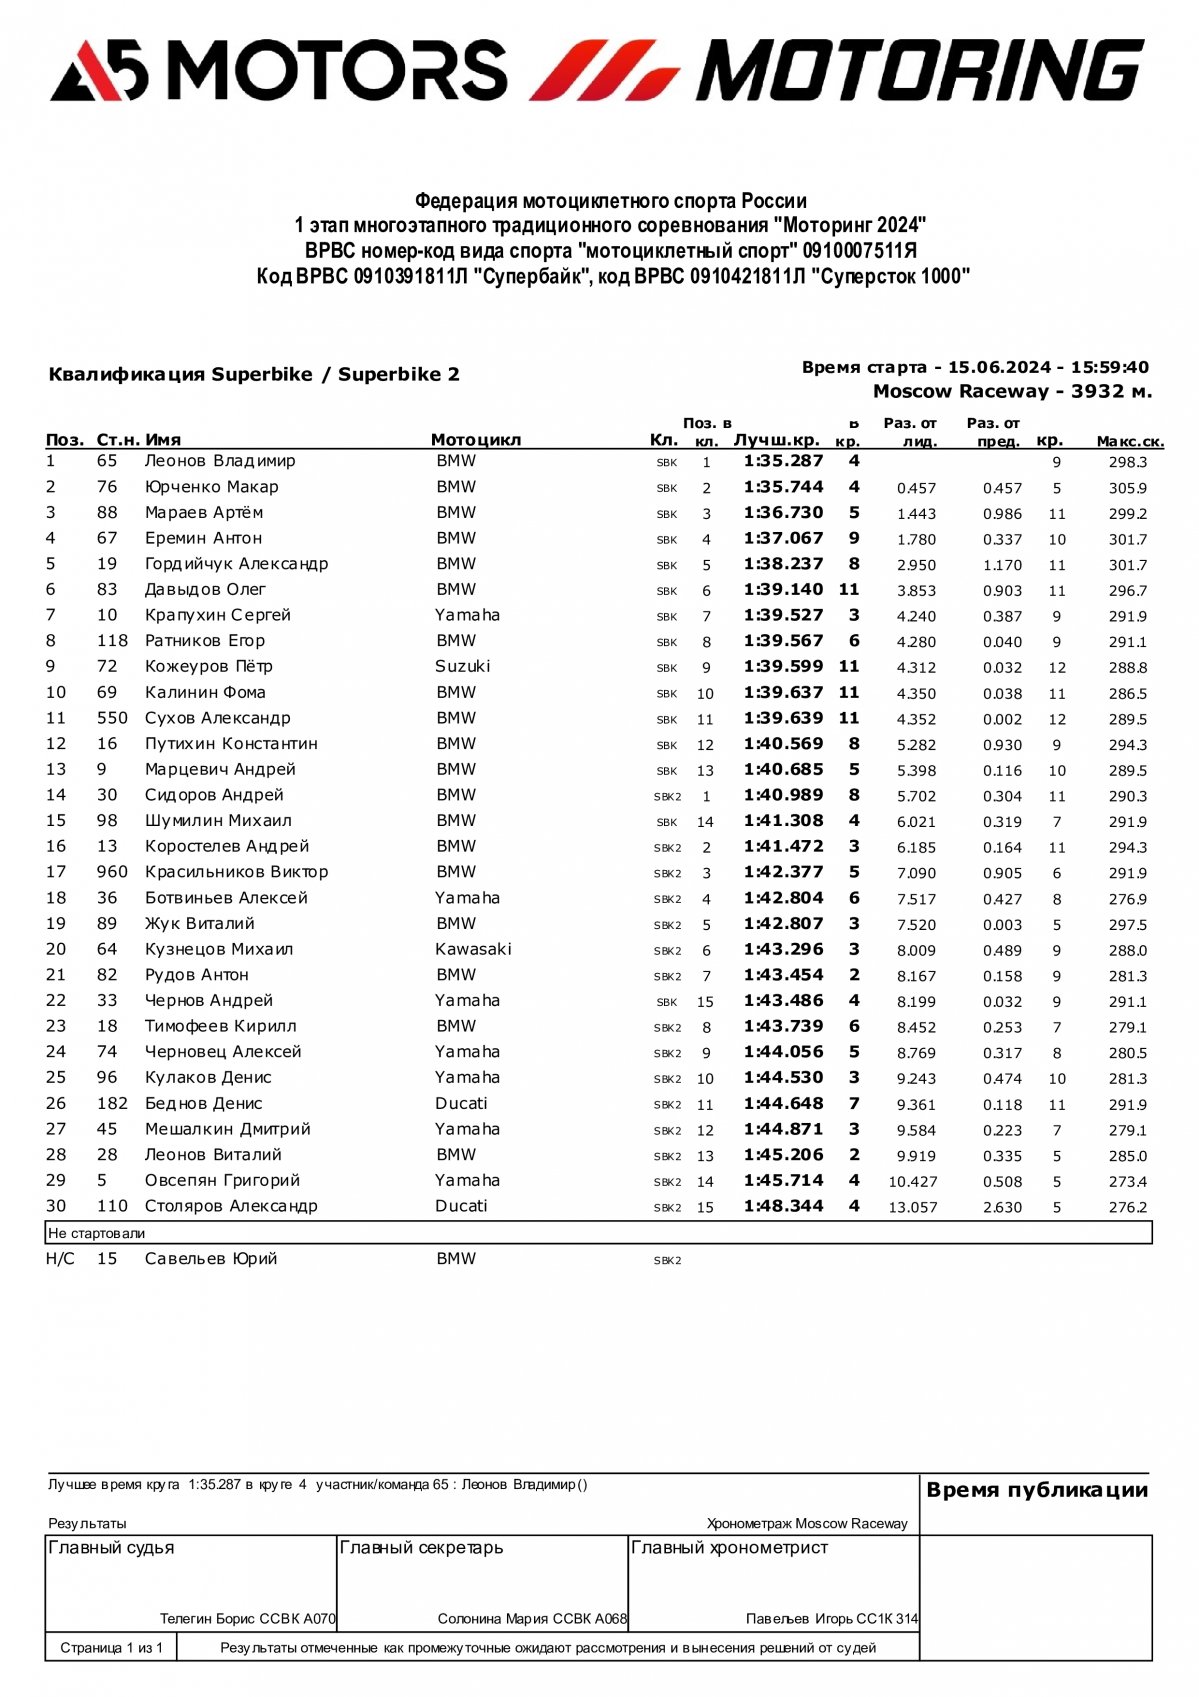 Результаты квалификации 1 этапа A5 Motors Motoring - Superbike/SBK2, Moscow Raceway